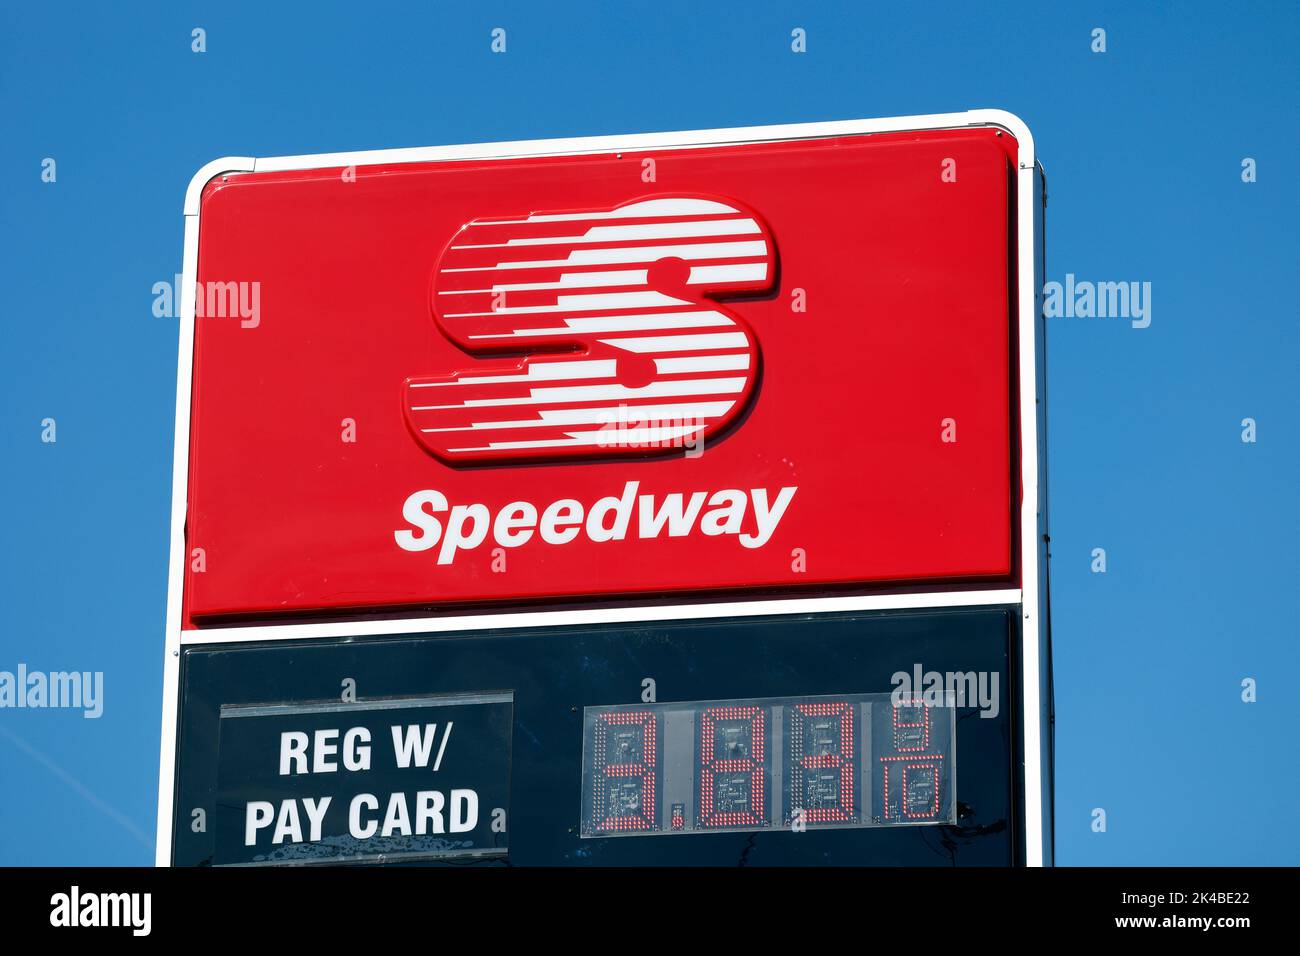 Signalisation pour une station-service Speedway contre un ciel bleu ensoleillé Banque D'Images